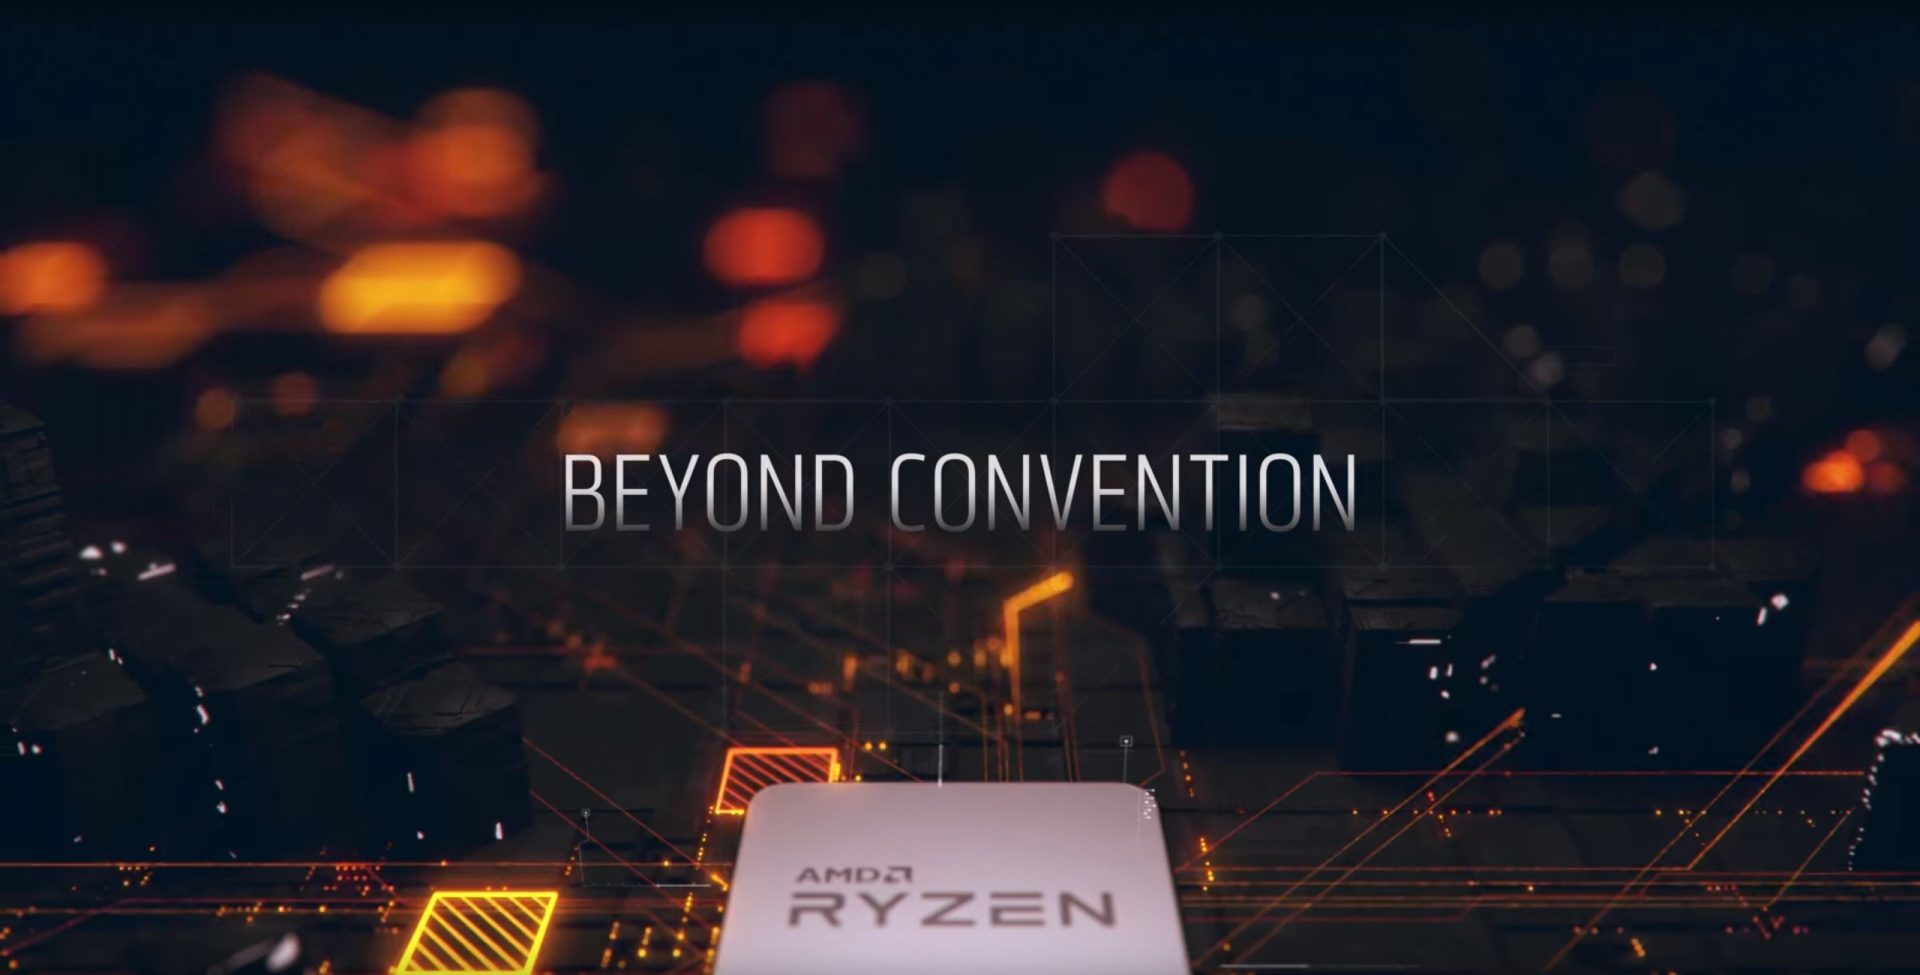 AMD-Ryzen-Best47-1920x975.jpg